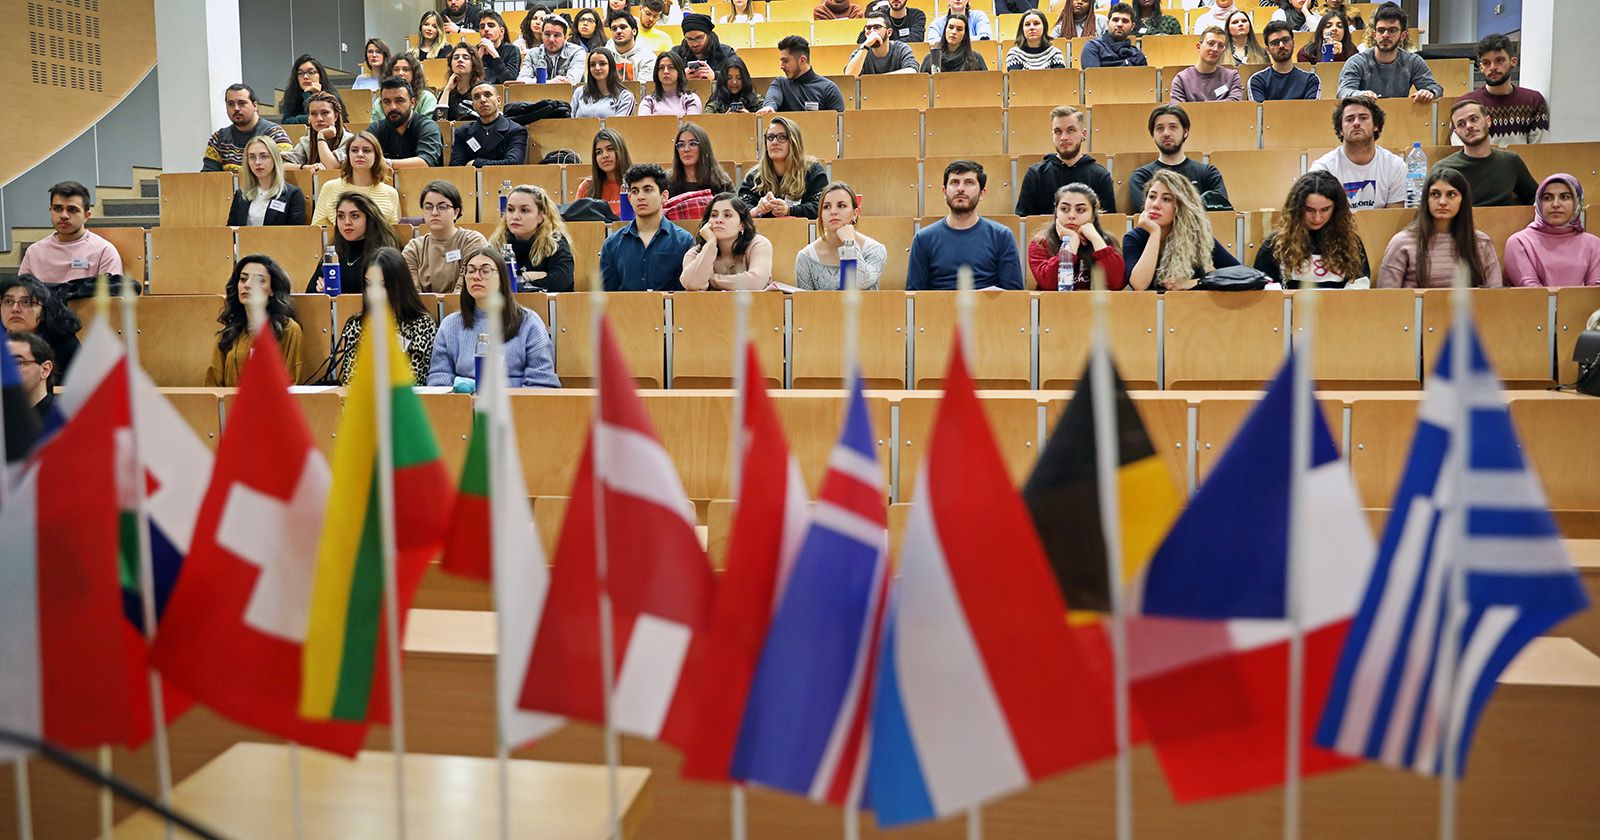  Grupa osób siedzi w audytorium na zajęciach/wykładzie, na pierwszym planie małe flagi europejskich państw